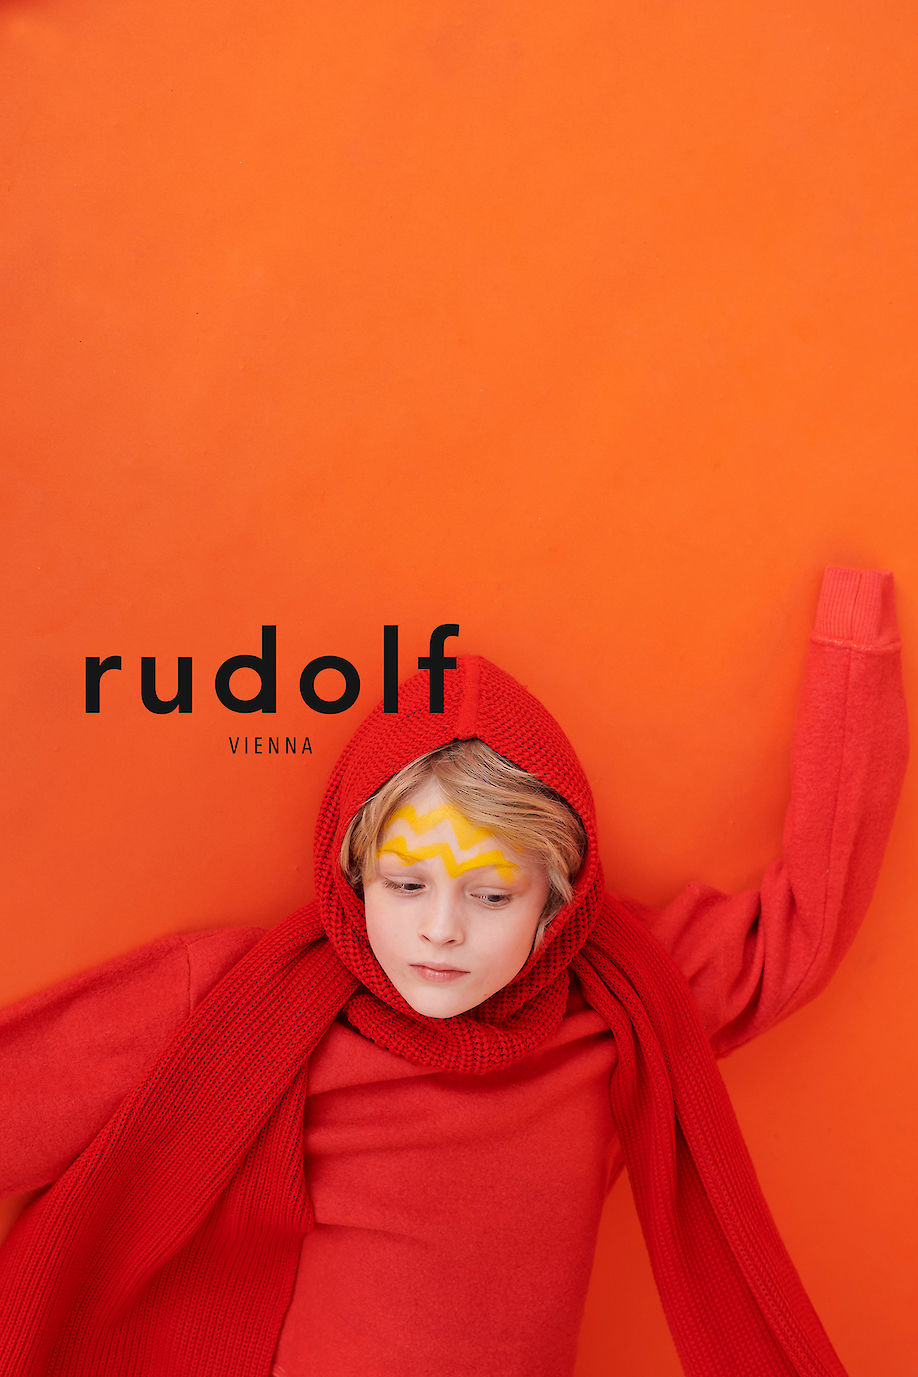 RAPHAEL JUST for RUDOLF Vienna